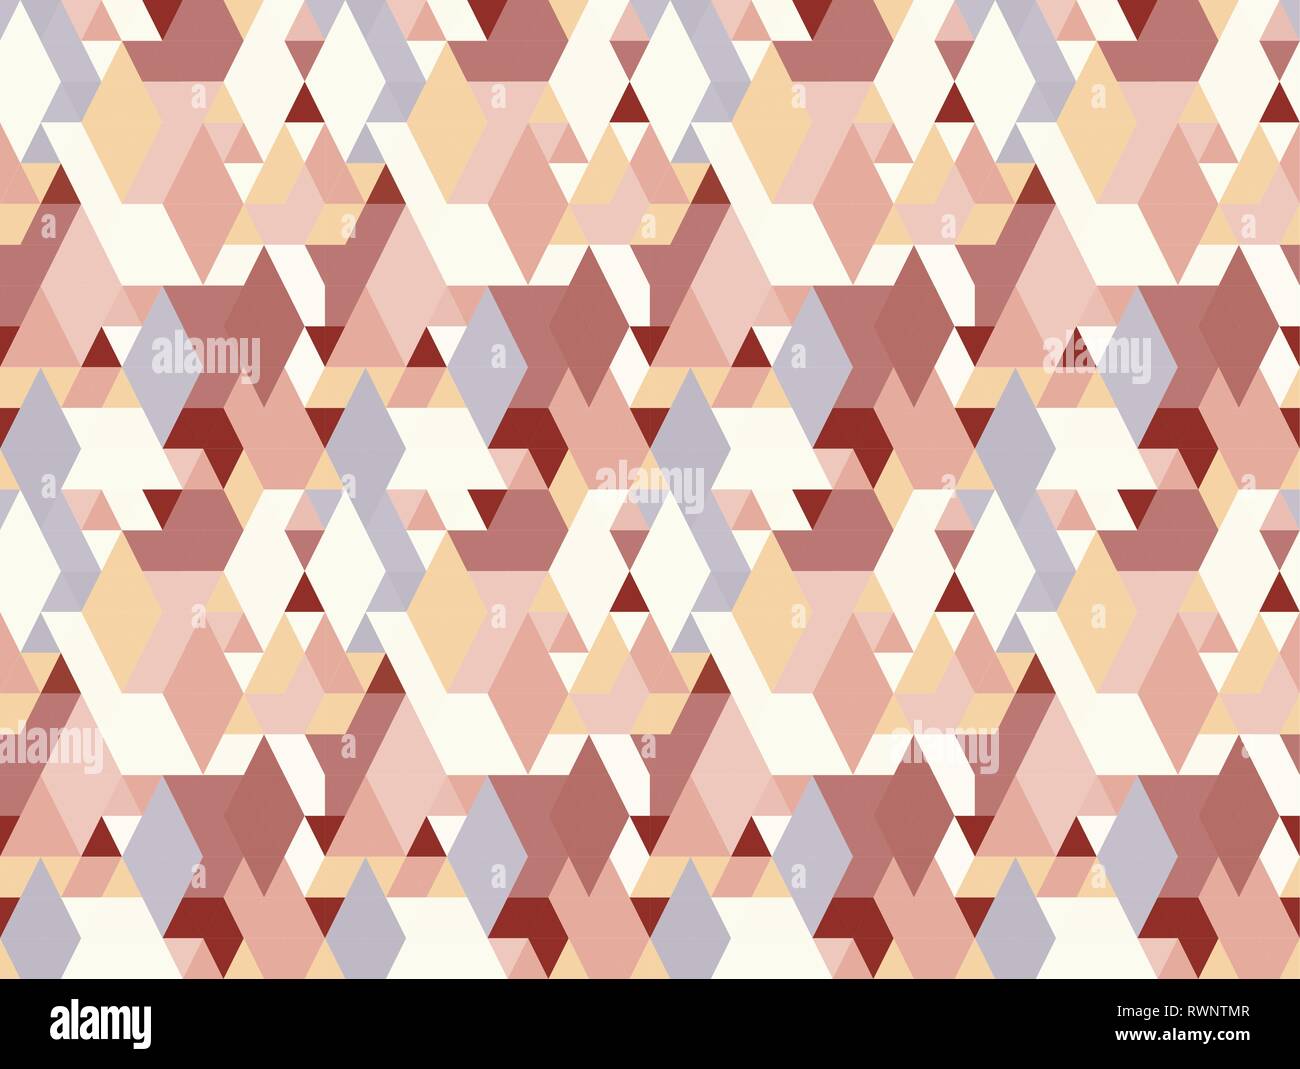 Vektor bunte geometrische Formen nahtlose Muster Hintergrund. Stock Vektor